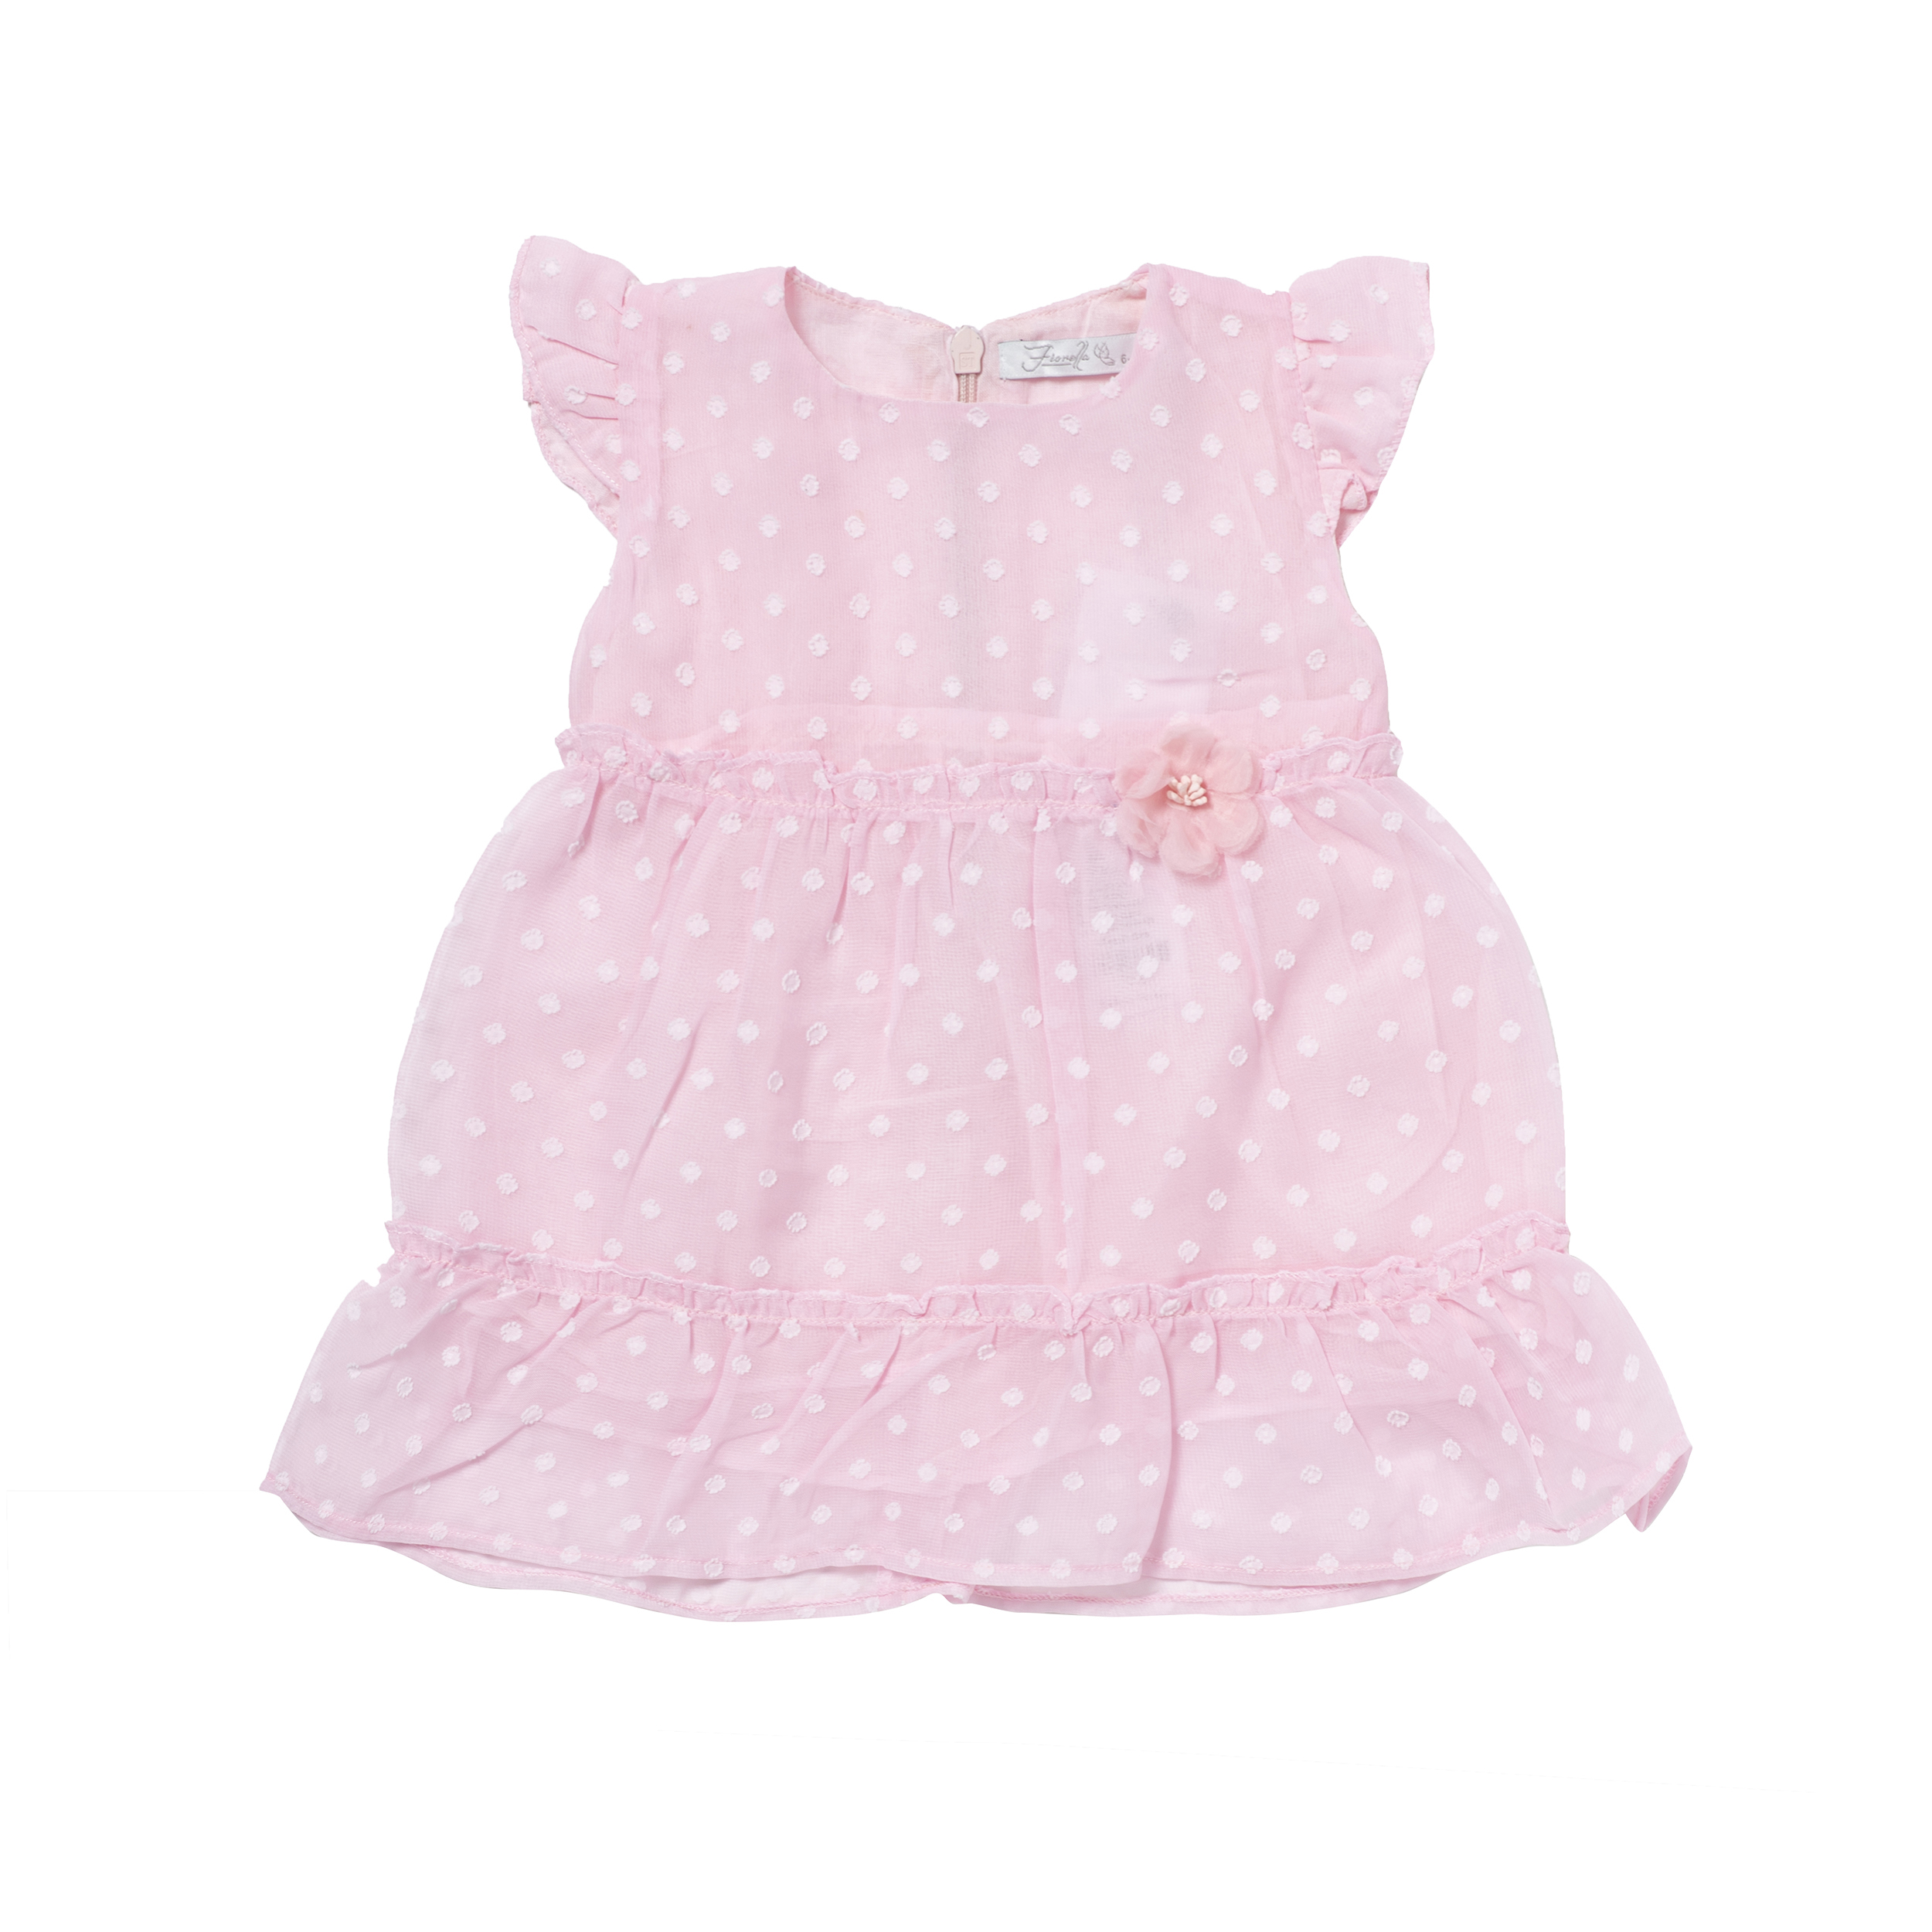 پیراهن نوزادی دخترانه فیورلا کد 2058 -  - 1